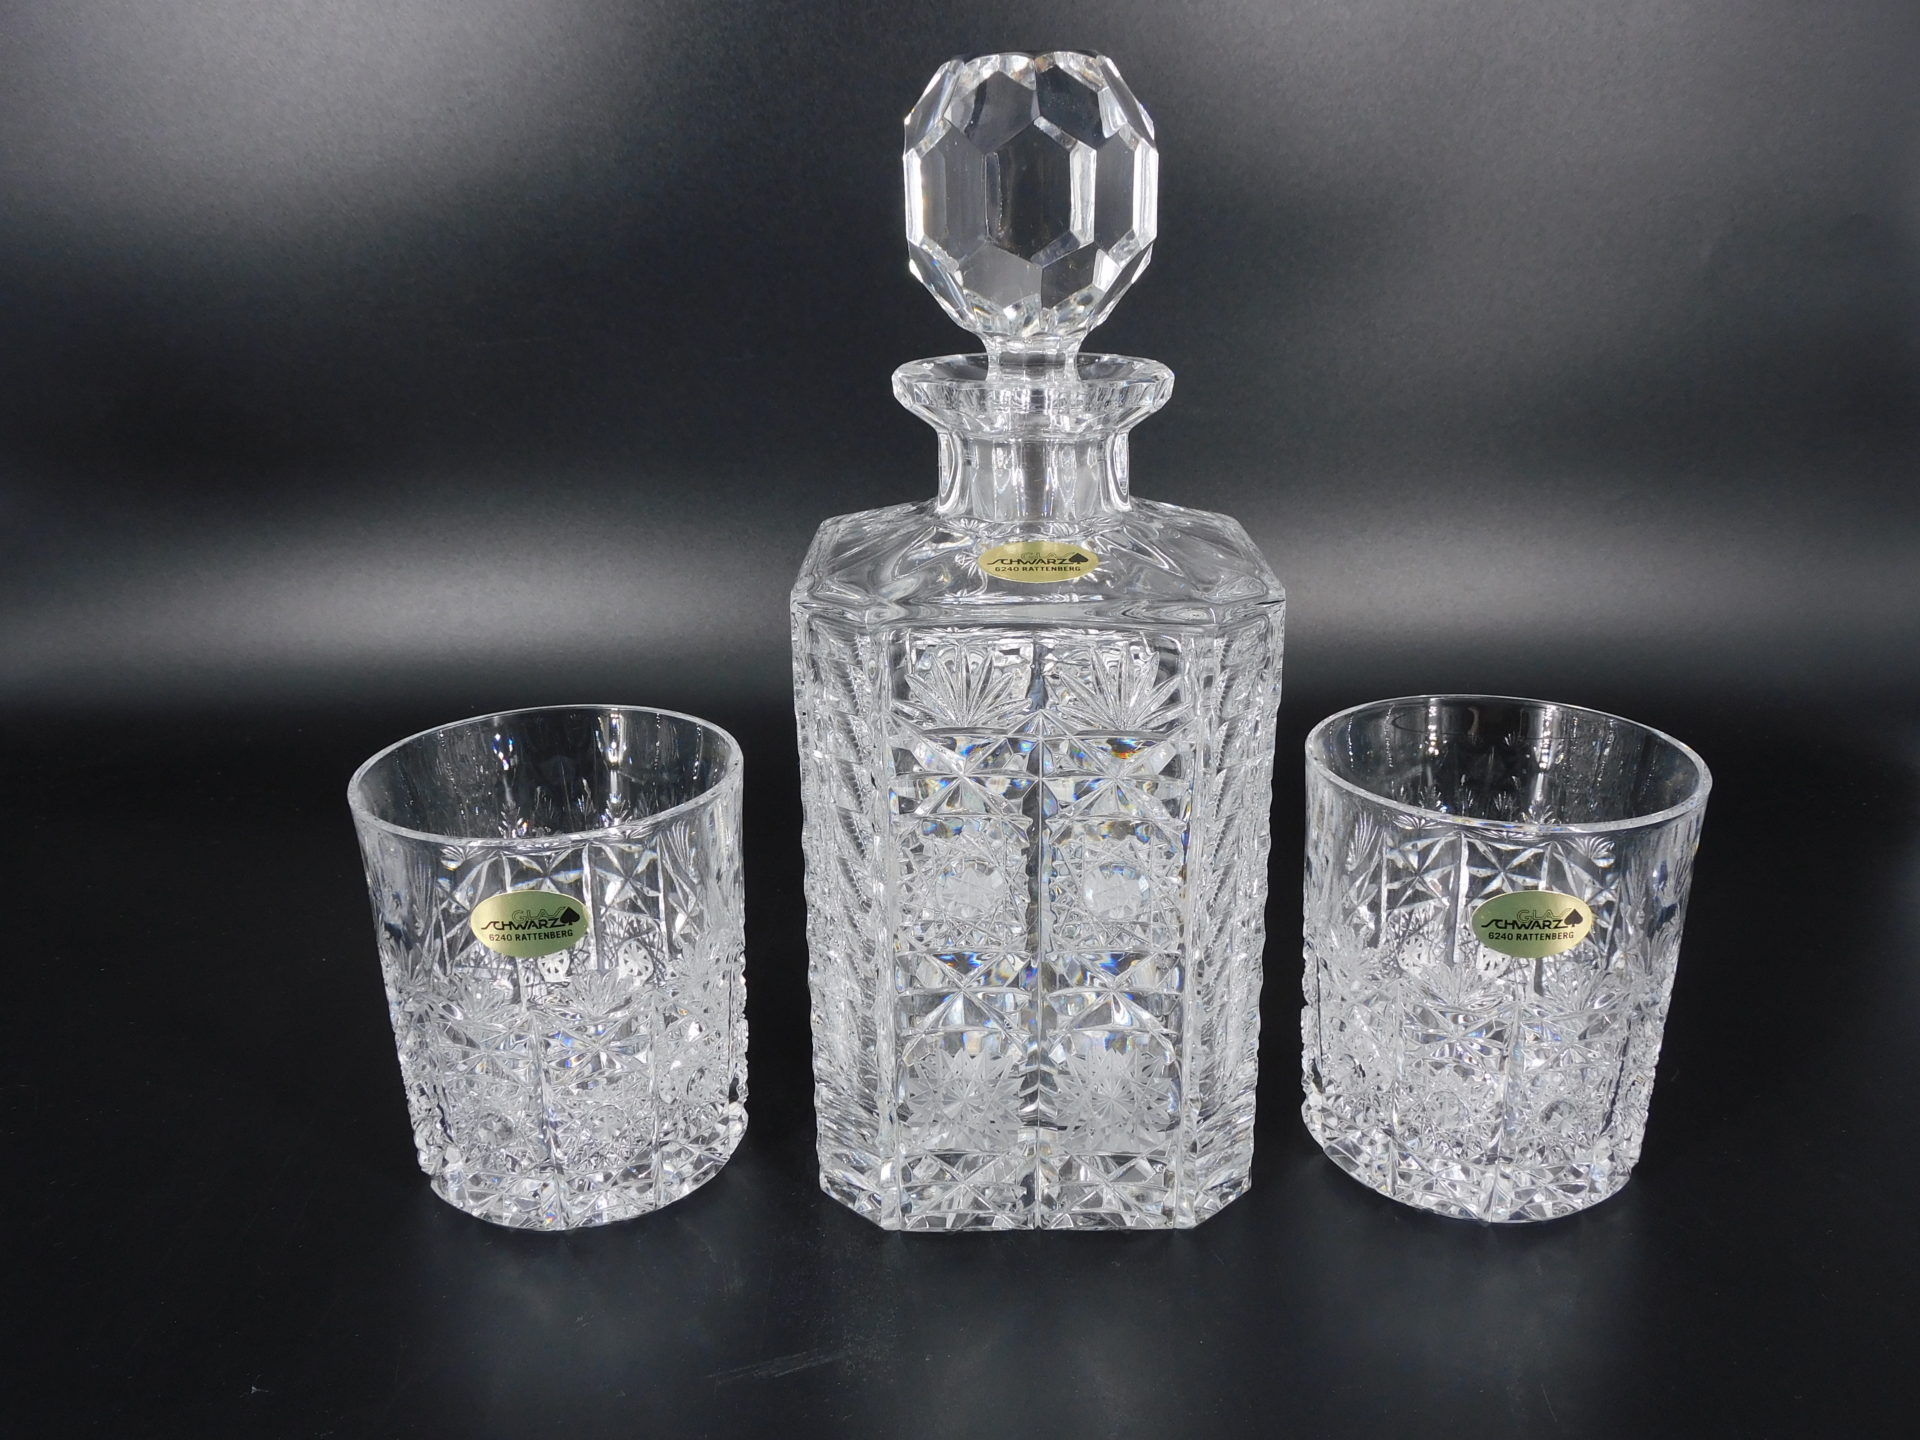 Whiskeyflasche aus Kristallglas mit Whiskeygläsern im Set